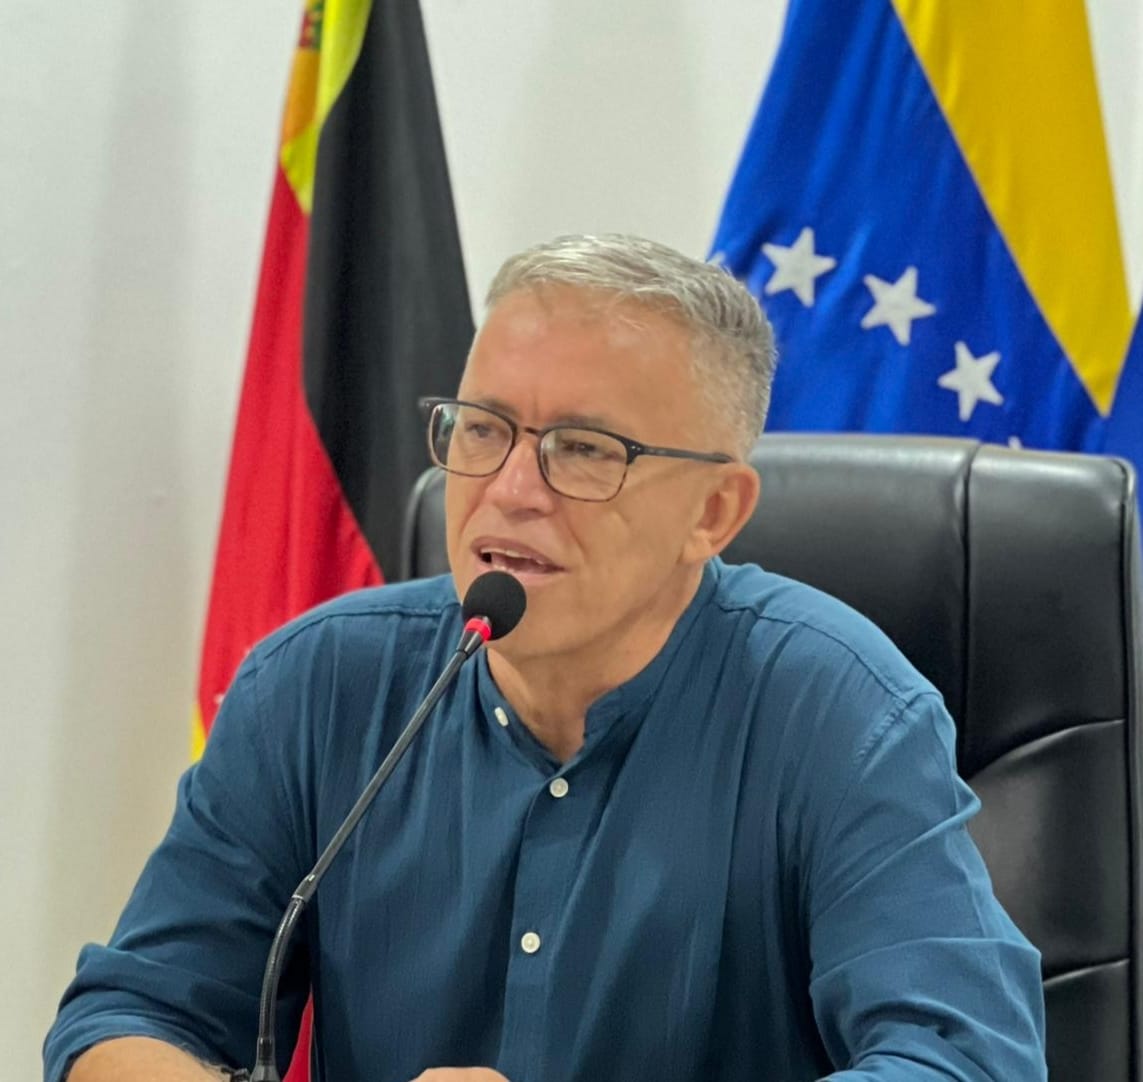 Alcalde de Los Salias llamó a no caer en “guerra de encuestas” ni perder el objetivo